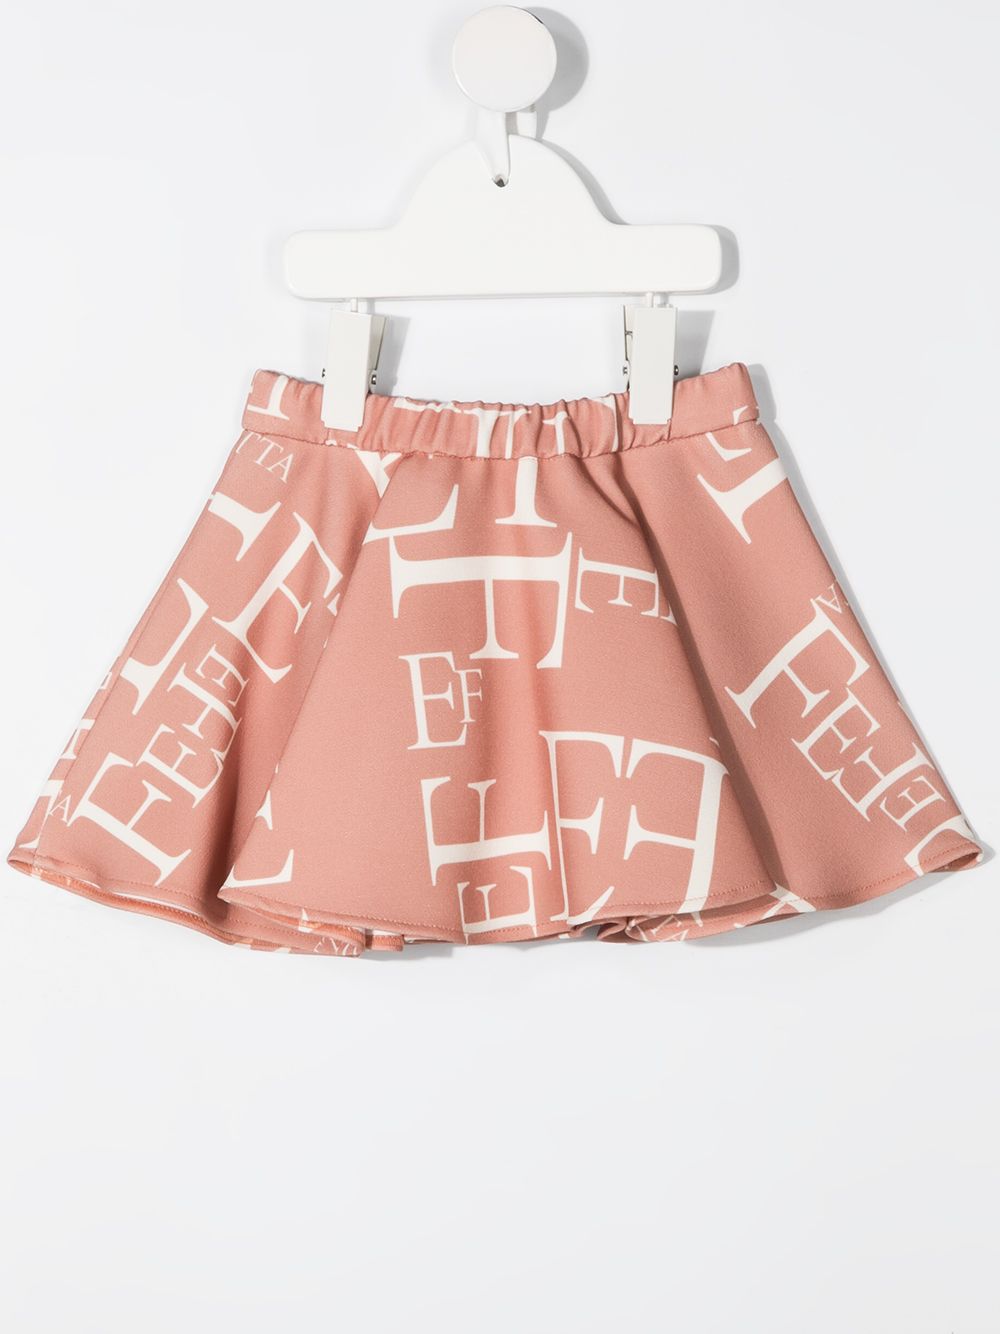 фото Elisabetta franchi la mia bambina расклешенная юбка с логотипом